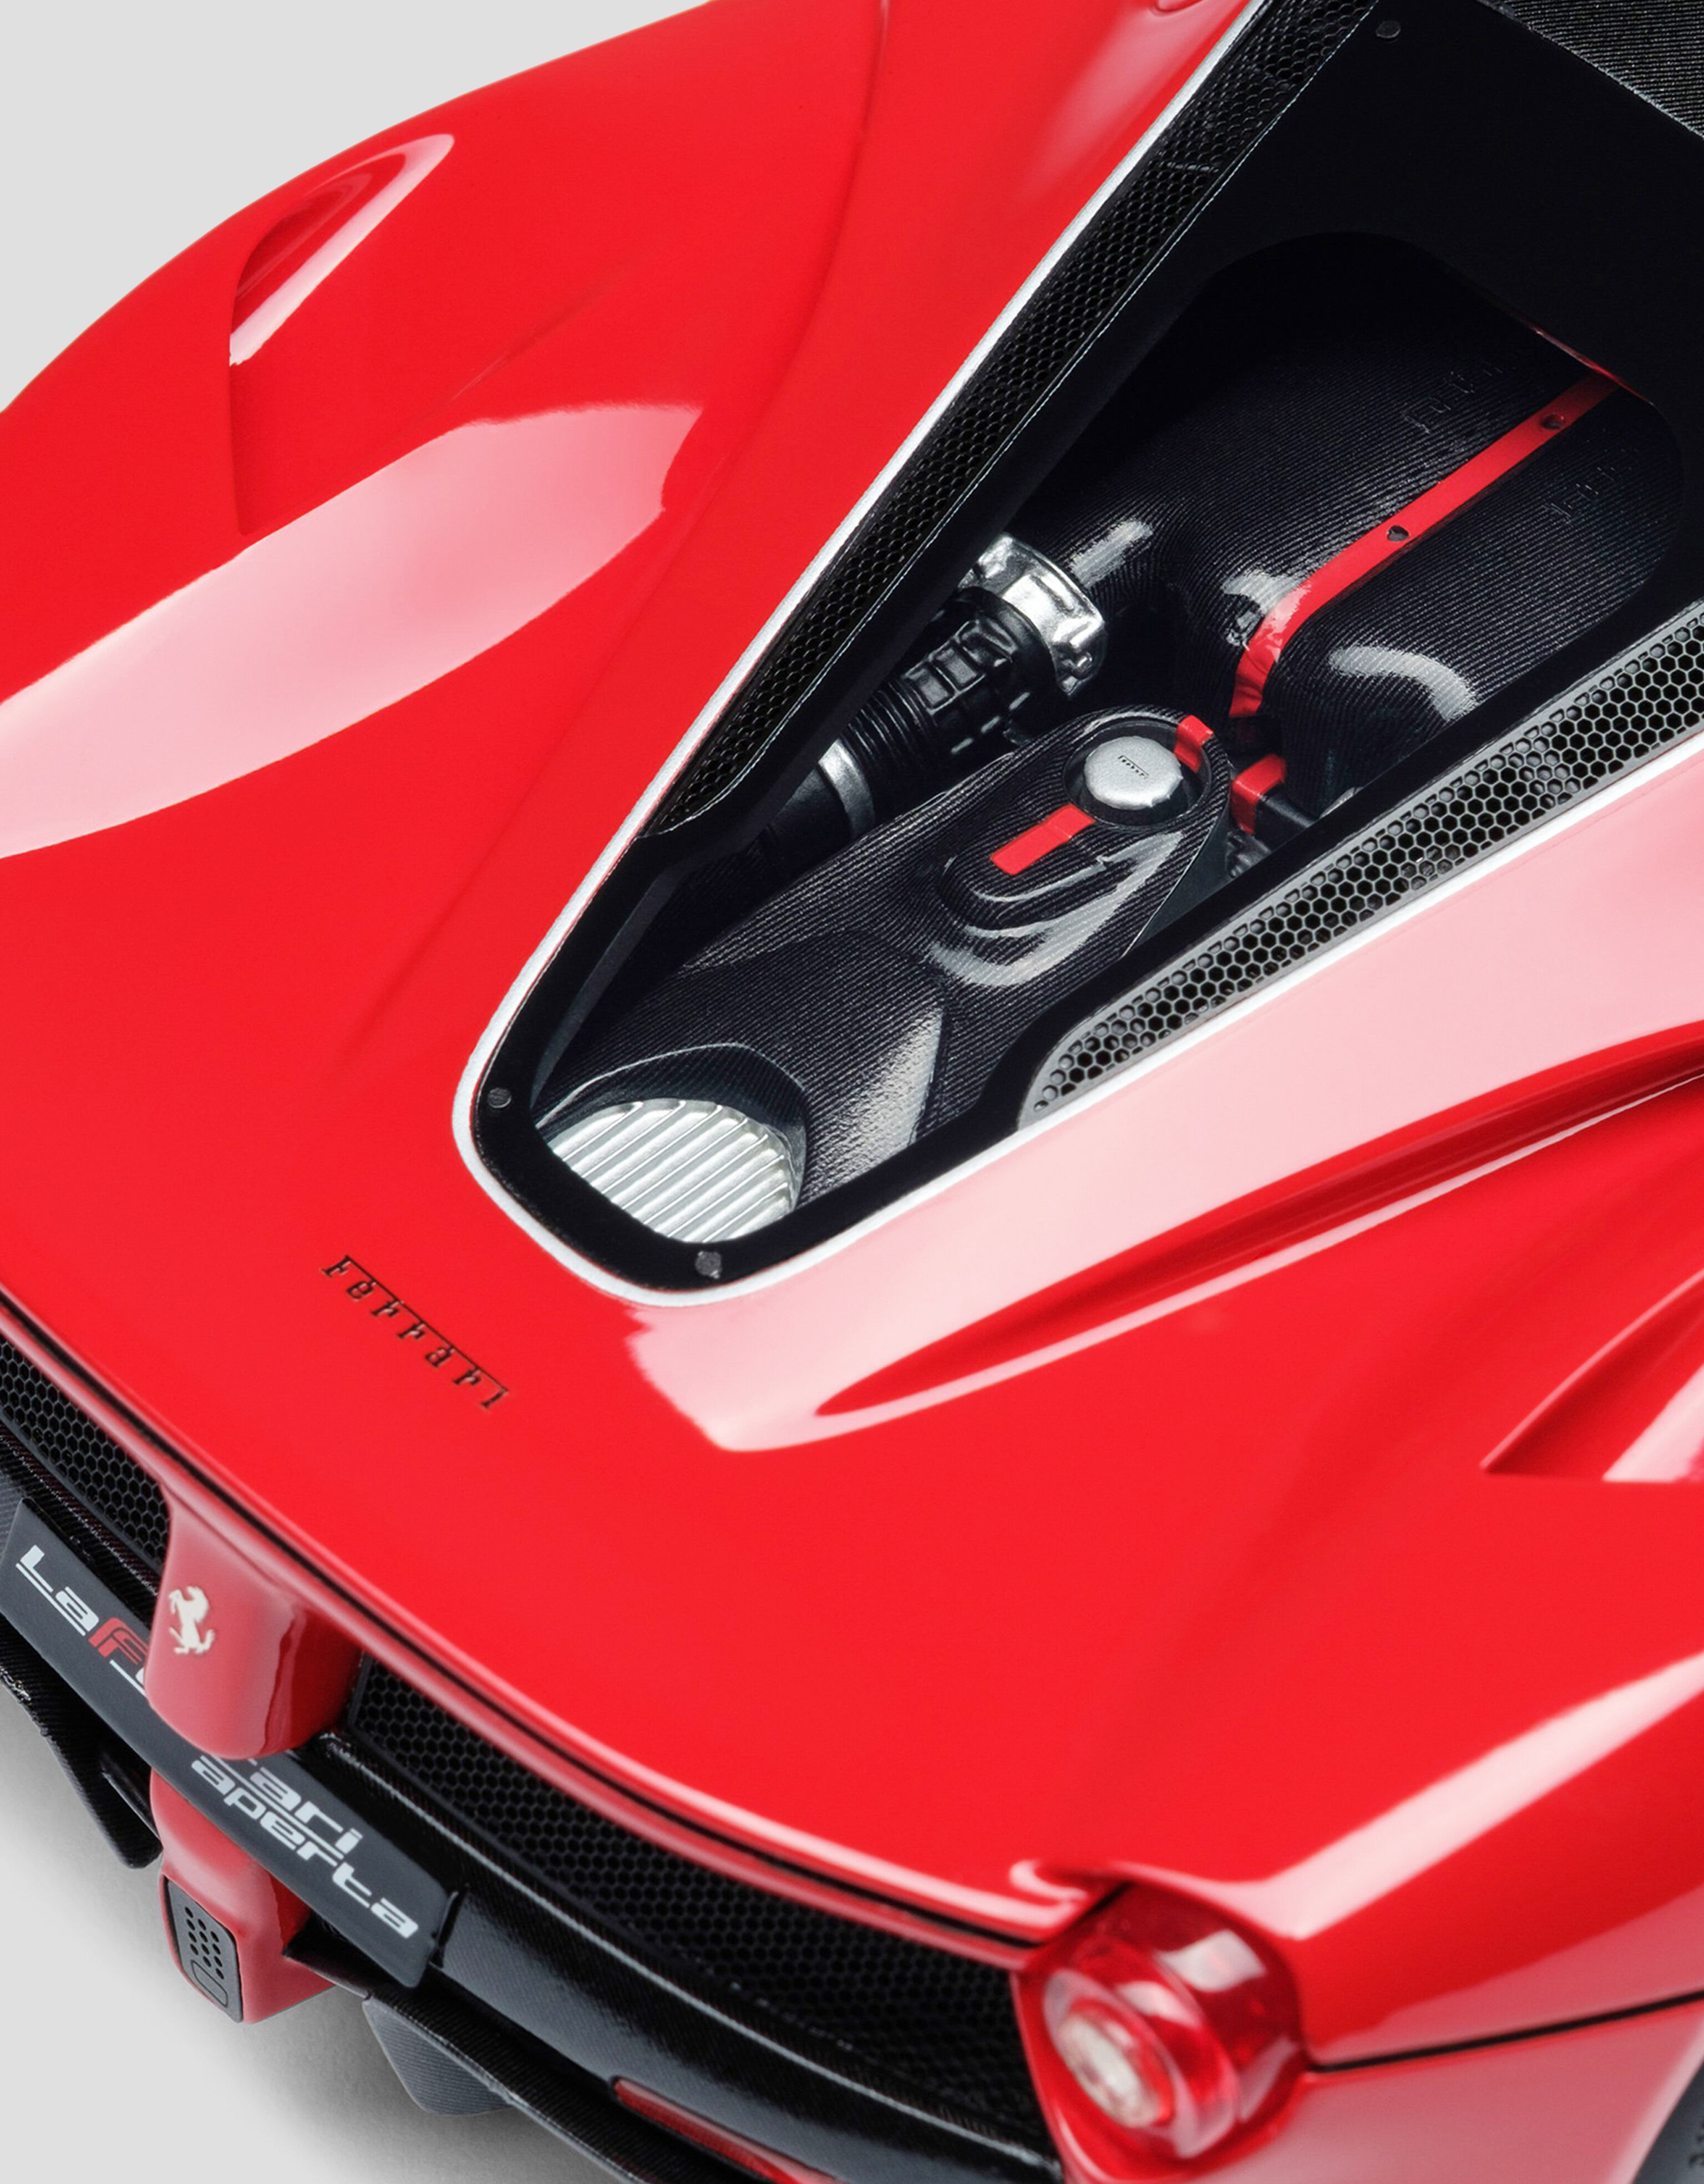 Ferrari Modèle LaFerrari Aperta à l’échelle 1/18 MULTICOLORE L7595f